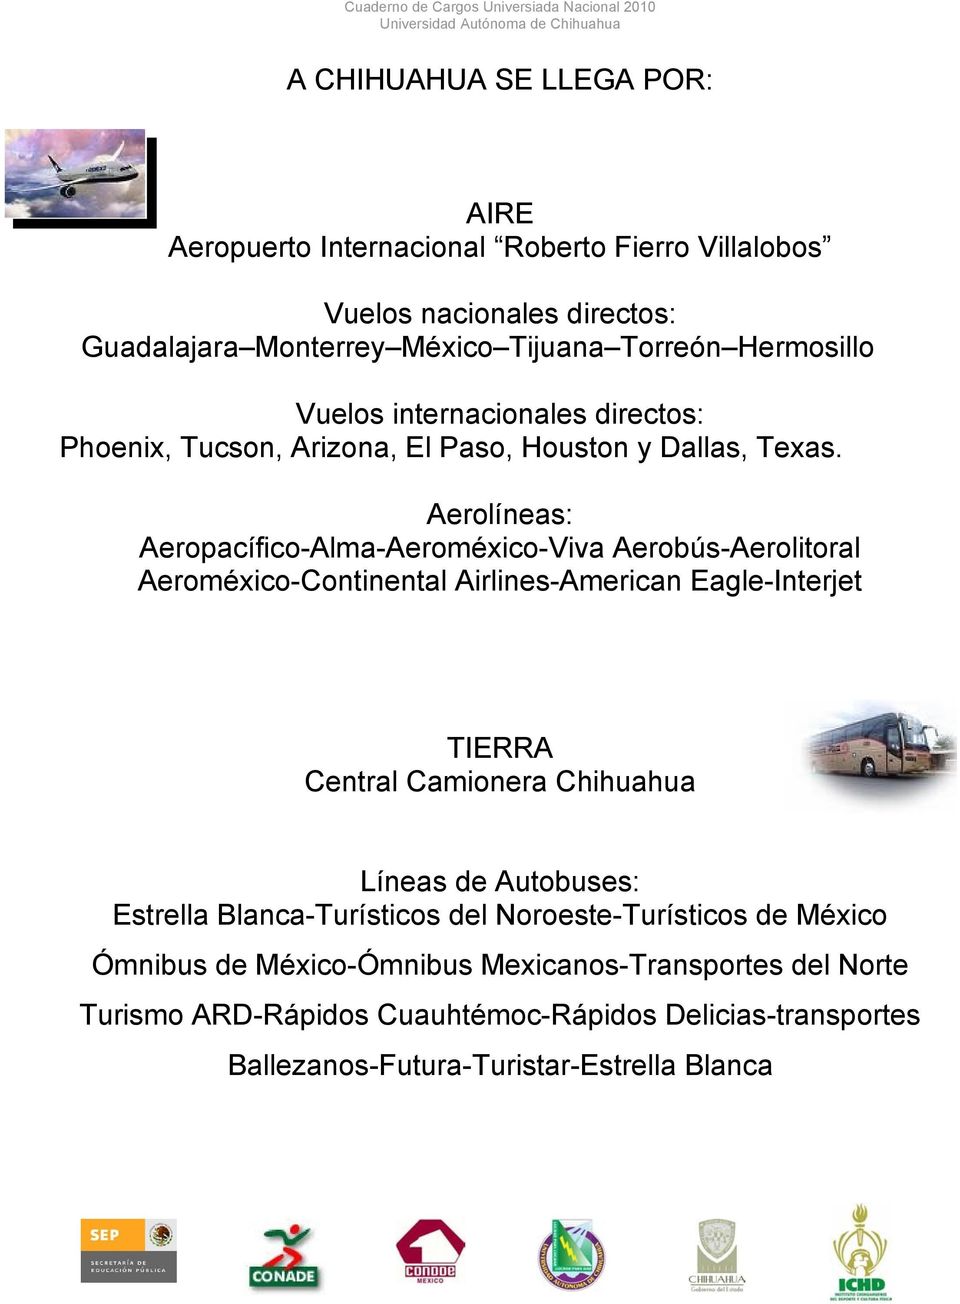 Aerolíneas: Aeropacífico-Alma-Aeroméxico-Viva Aerobús-Aerolitoral Aeroméxico-Continental Airlines-American Eagle-Interjet TIERRA Central Camionera Chihuahua Líneas